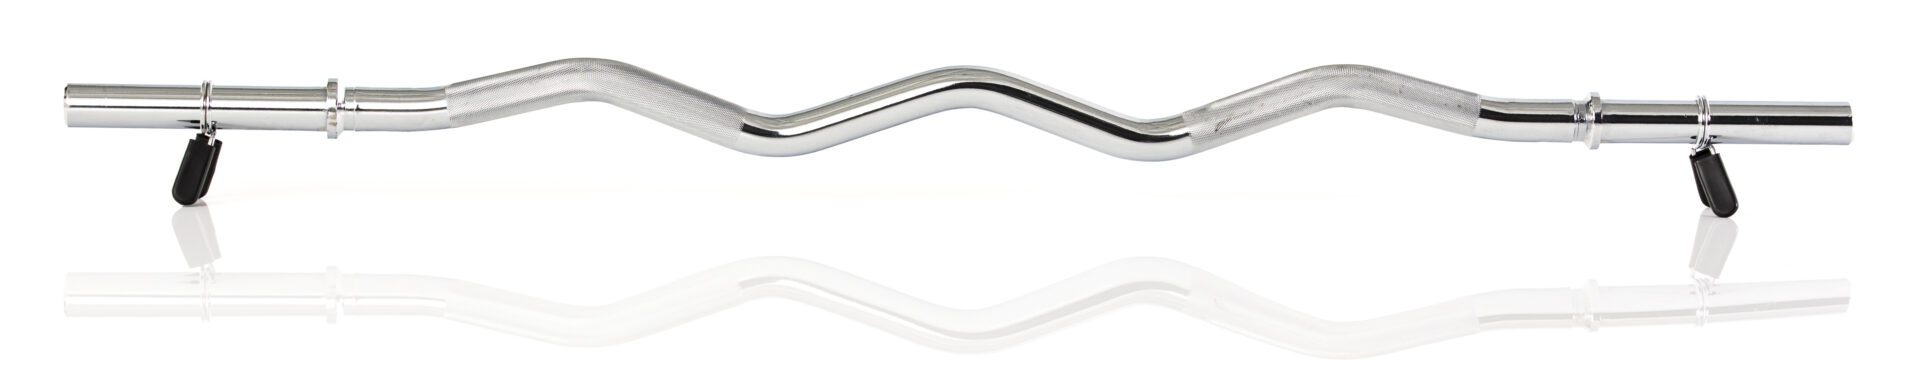 Barbell - Gymstick Curved Bar 120 cm - 7 kg /Ø 30 mm - Outlet